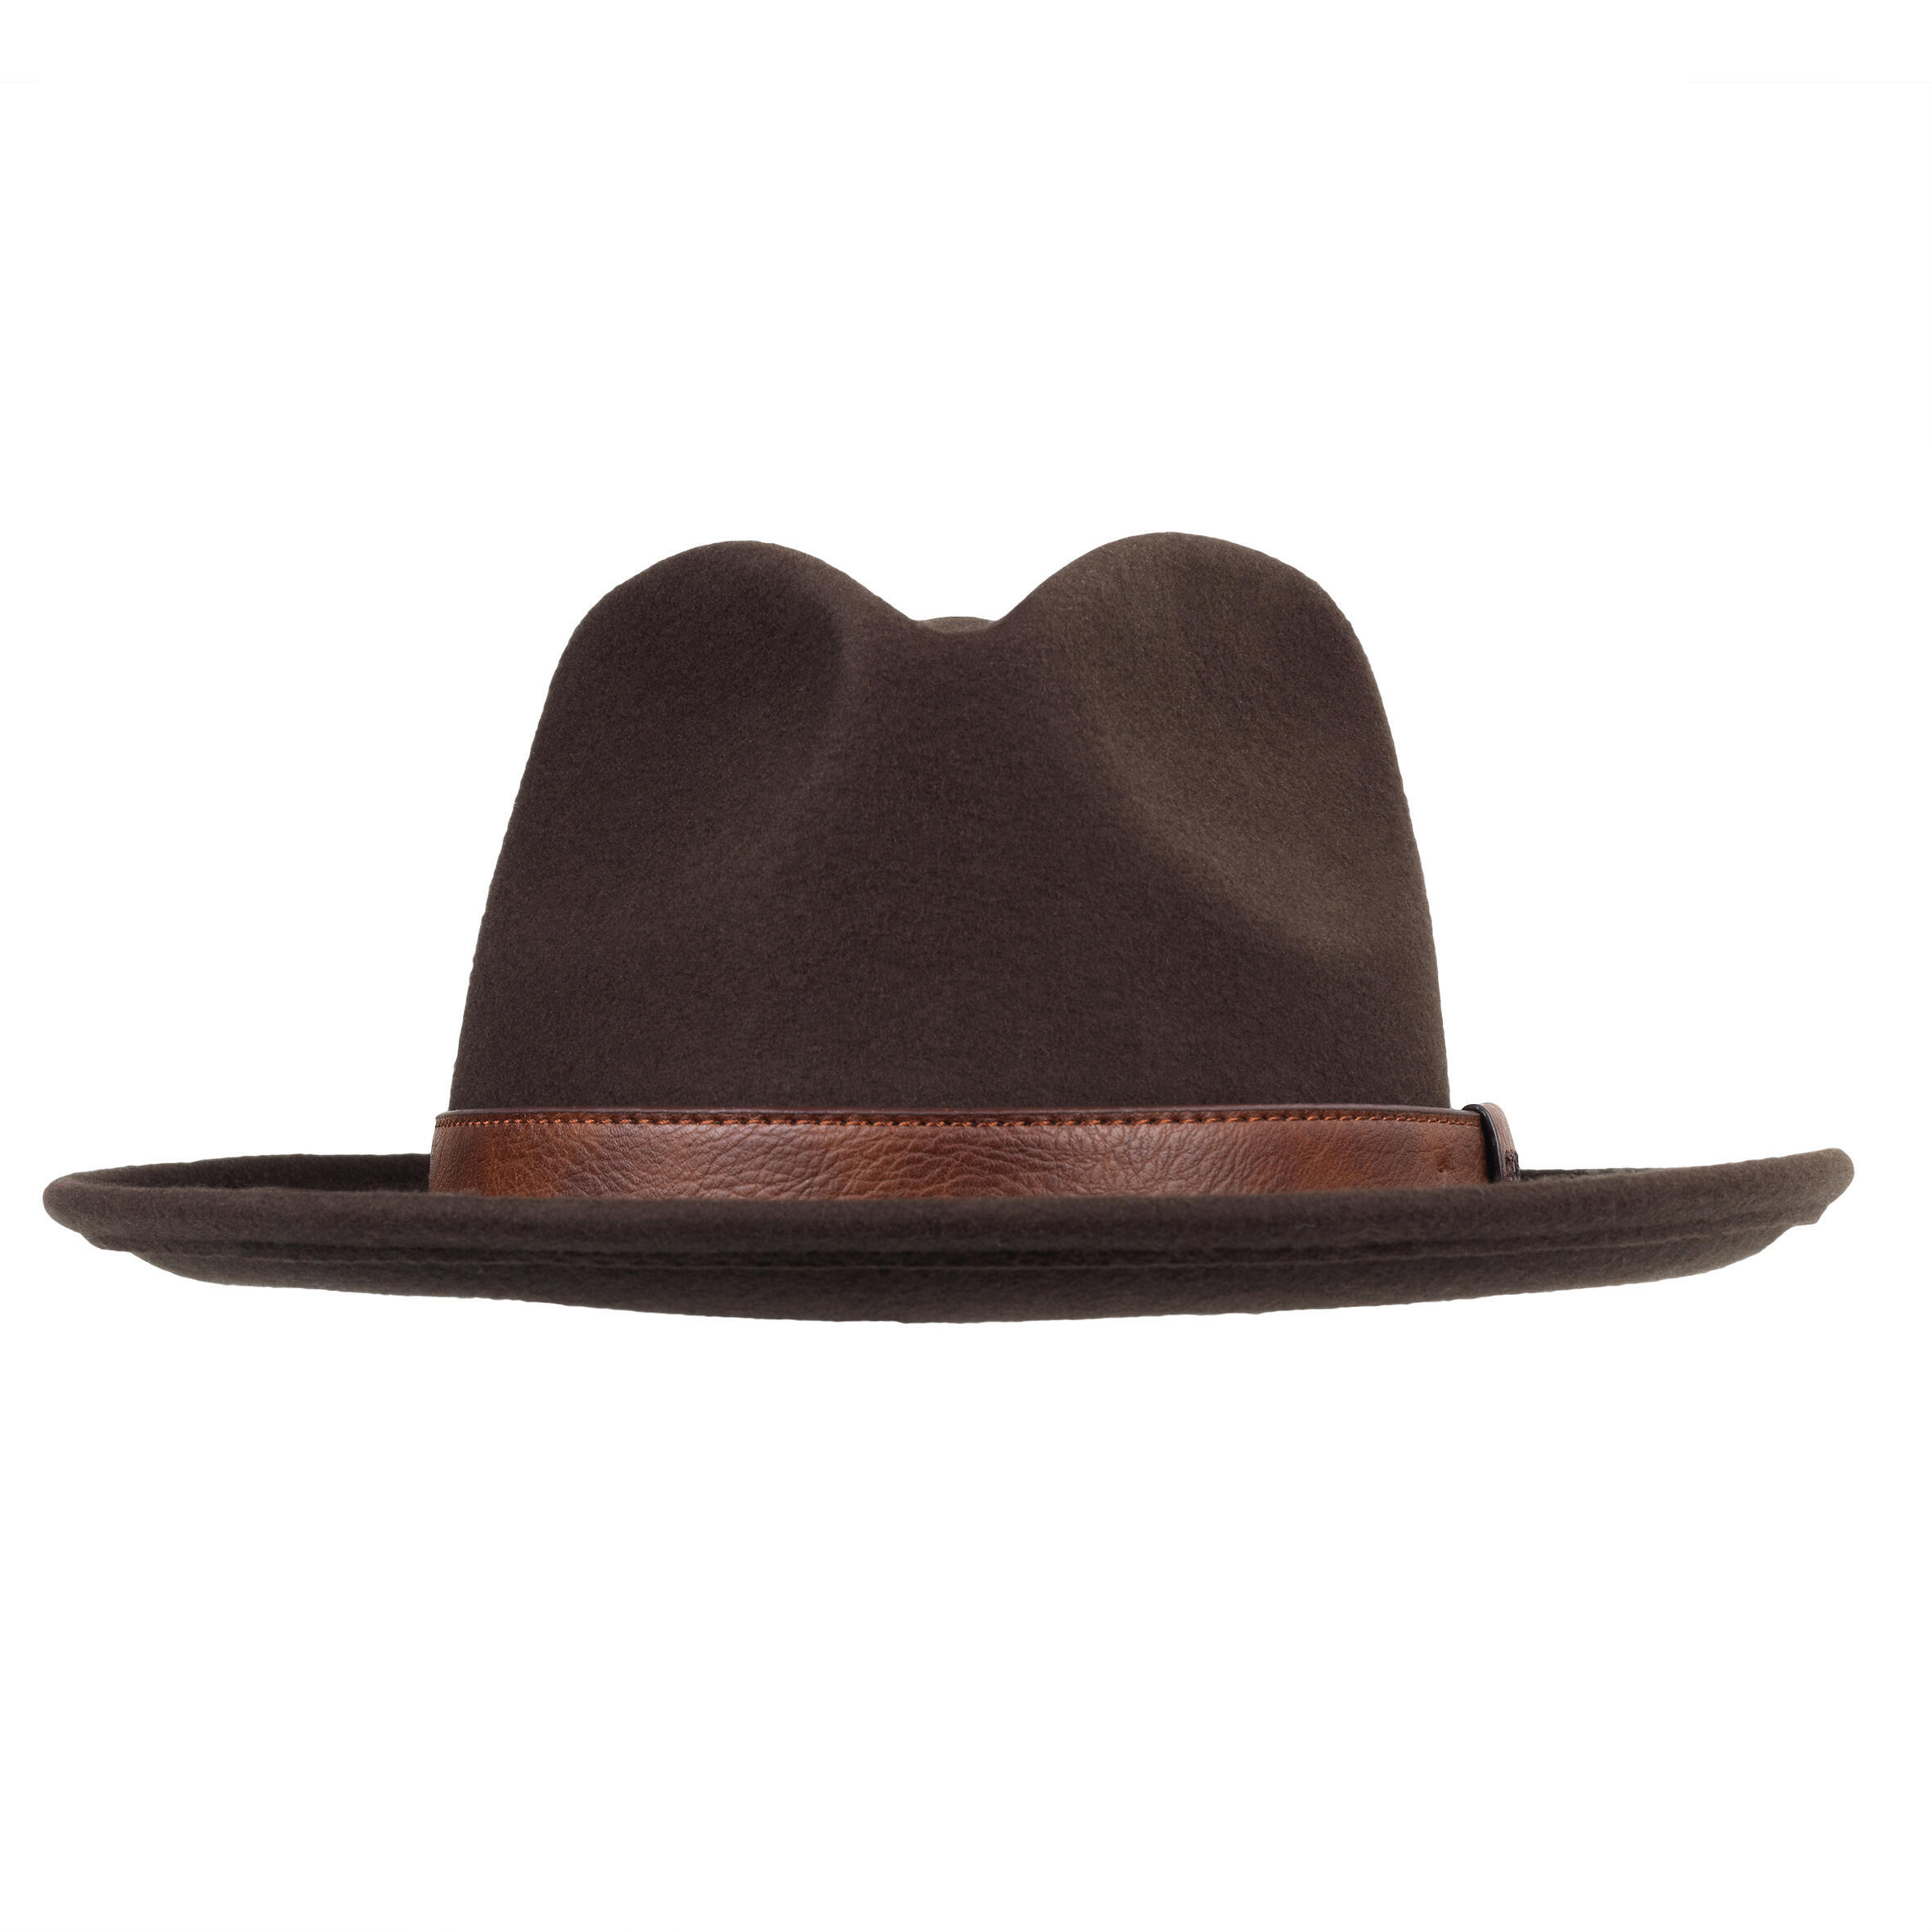 цена Охотничья шапка 100 фетр водоотталкивающая коричневая SOLOGNAC, кофе коричневый